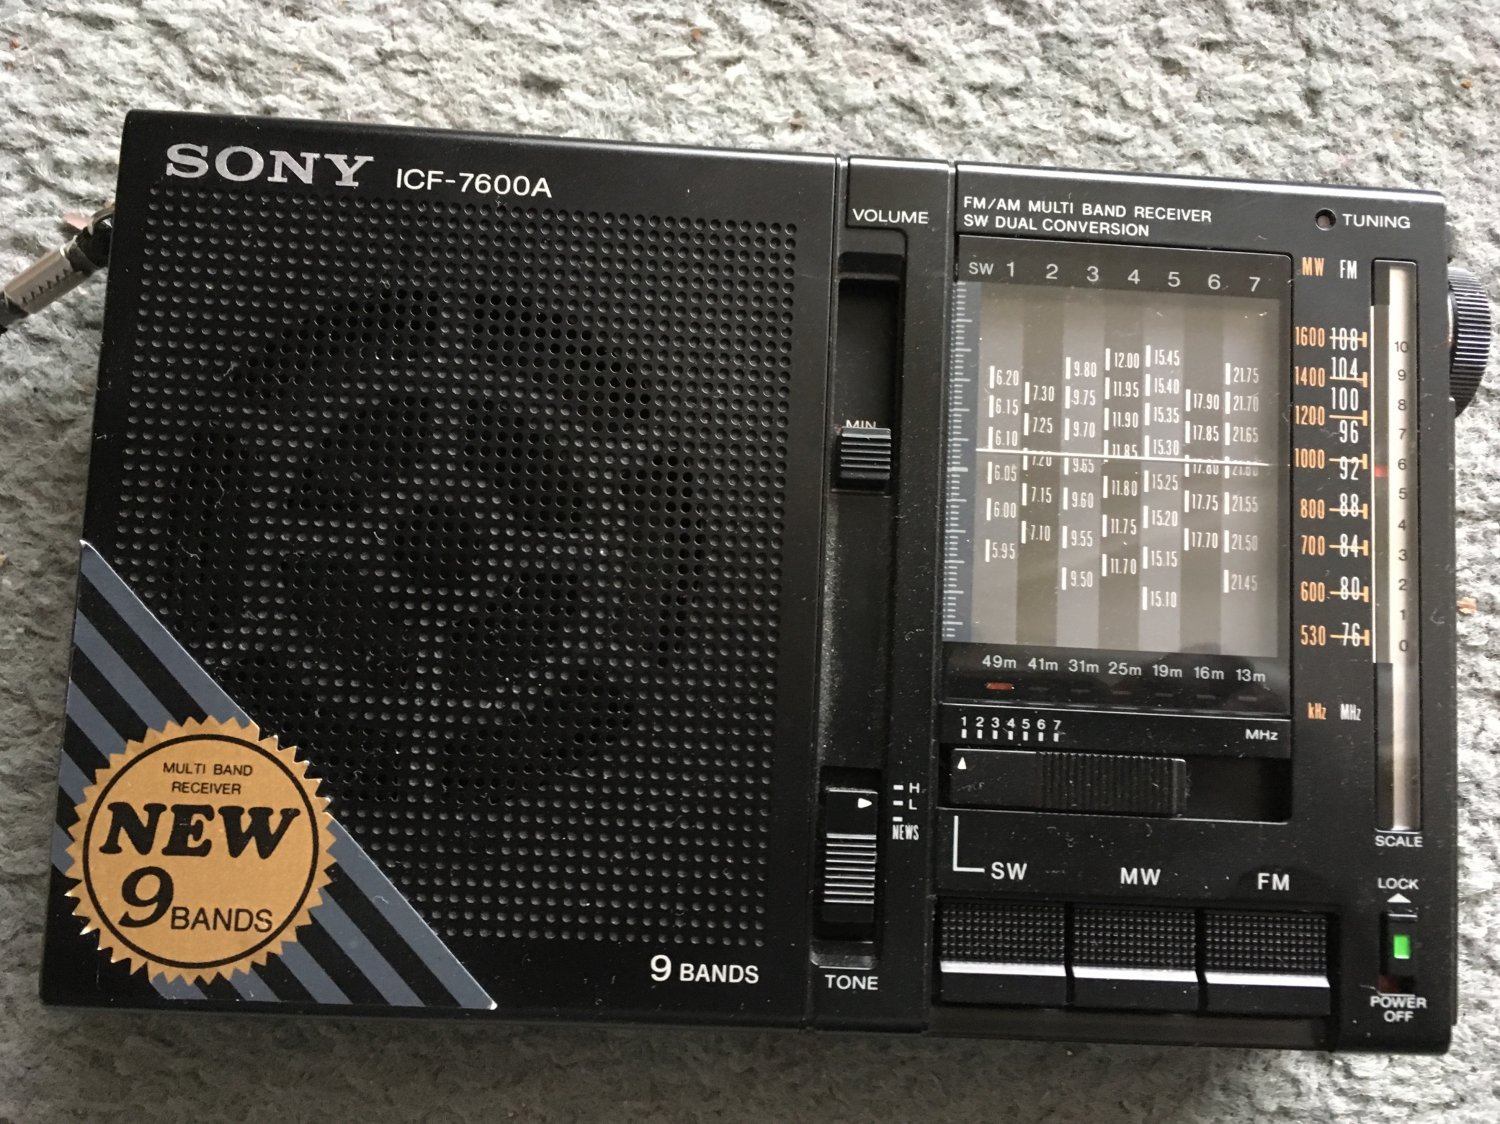 Sony ICF-7600A Multi Band Receiver 9 Band AM/FM/SW Radio.